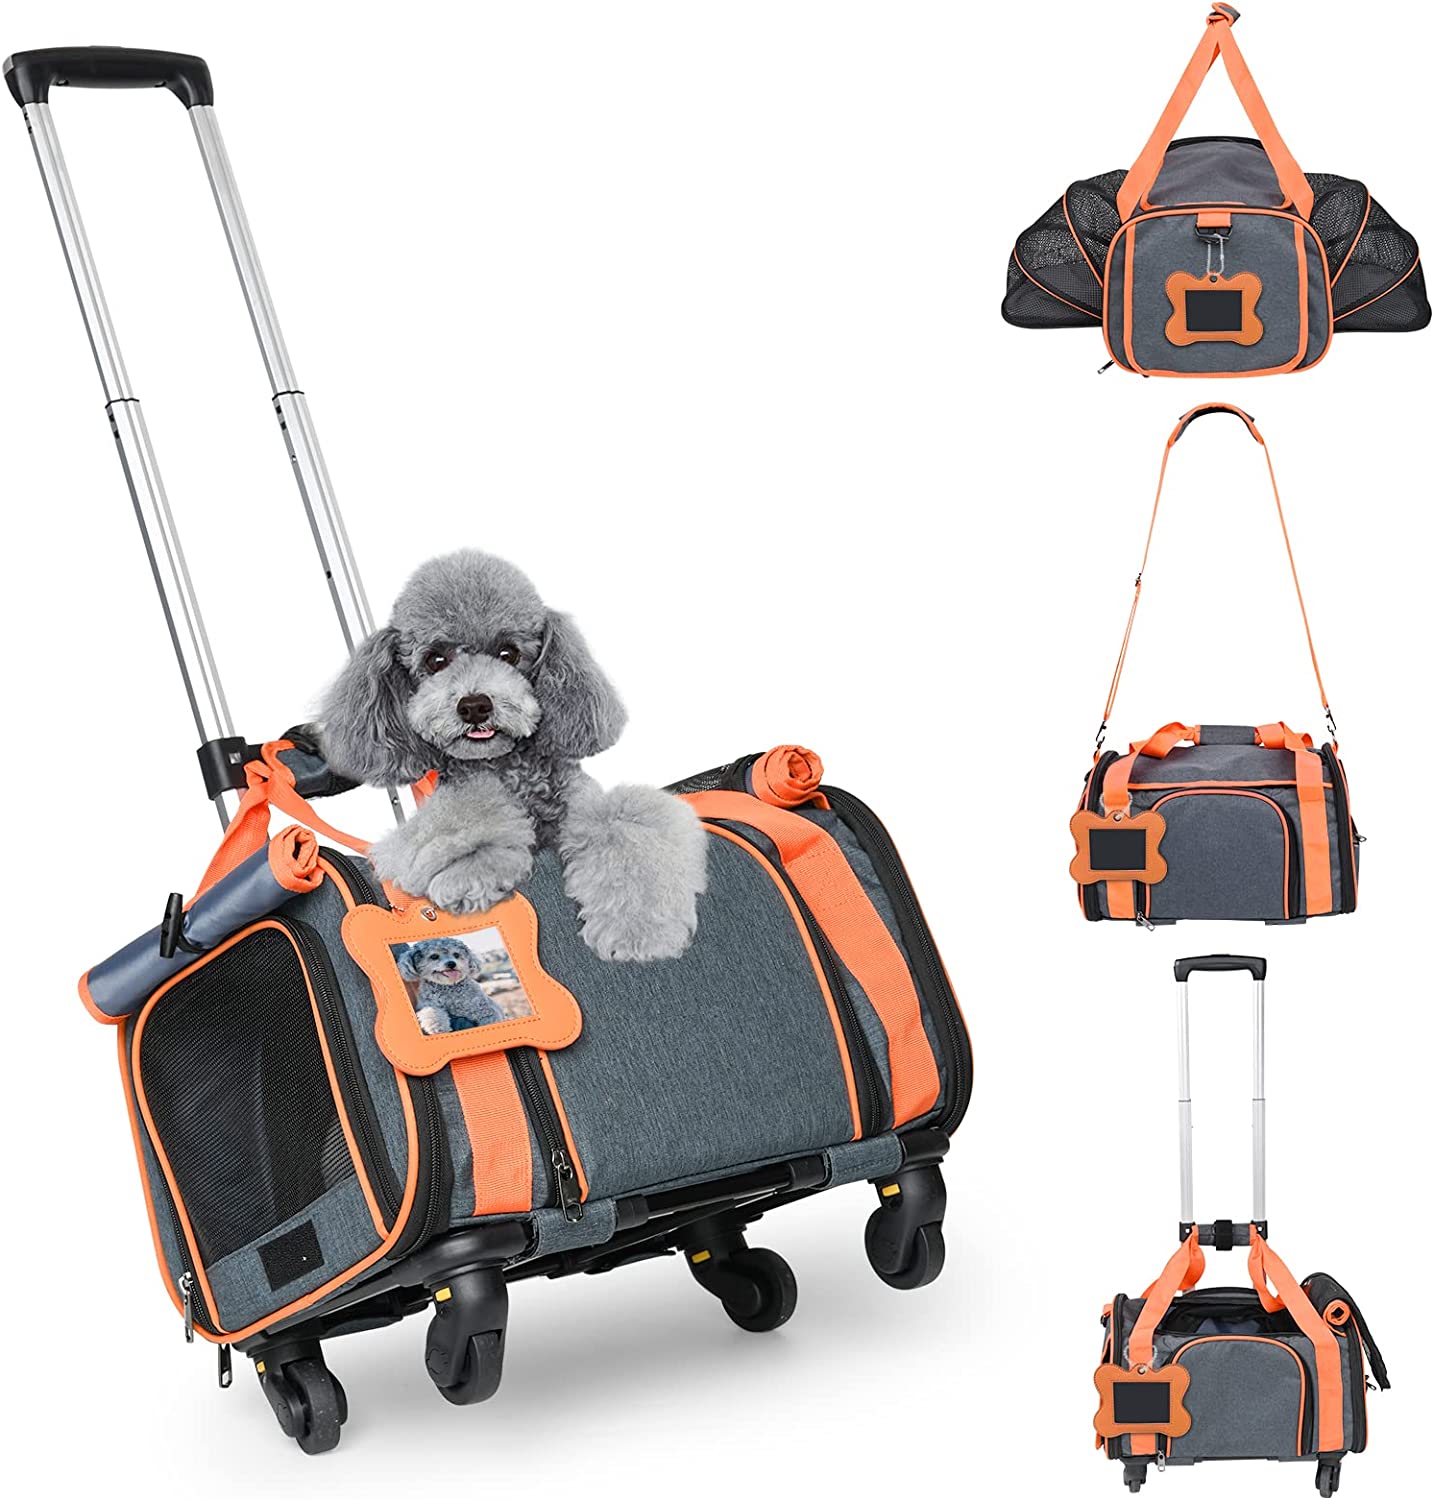 کیف ، کالسکه مسافرتی سگ ، گربه  ، کریر حمل حیوانات خانگی (مورد تایید شرکتهای هواپیمایی )برند: LOOBANI  کد : KT 1010